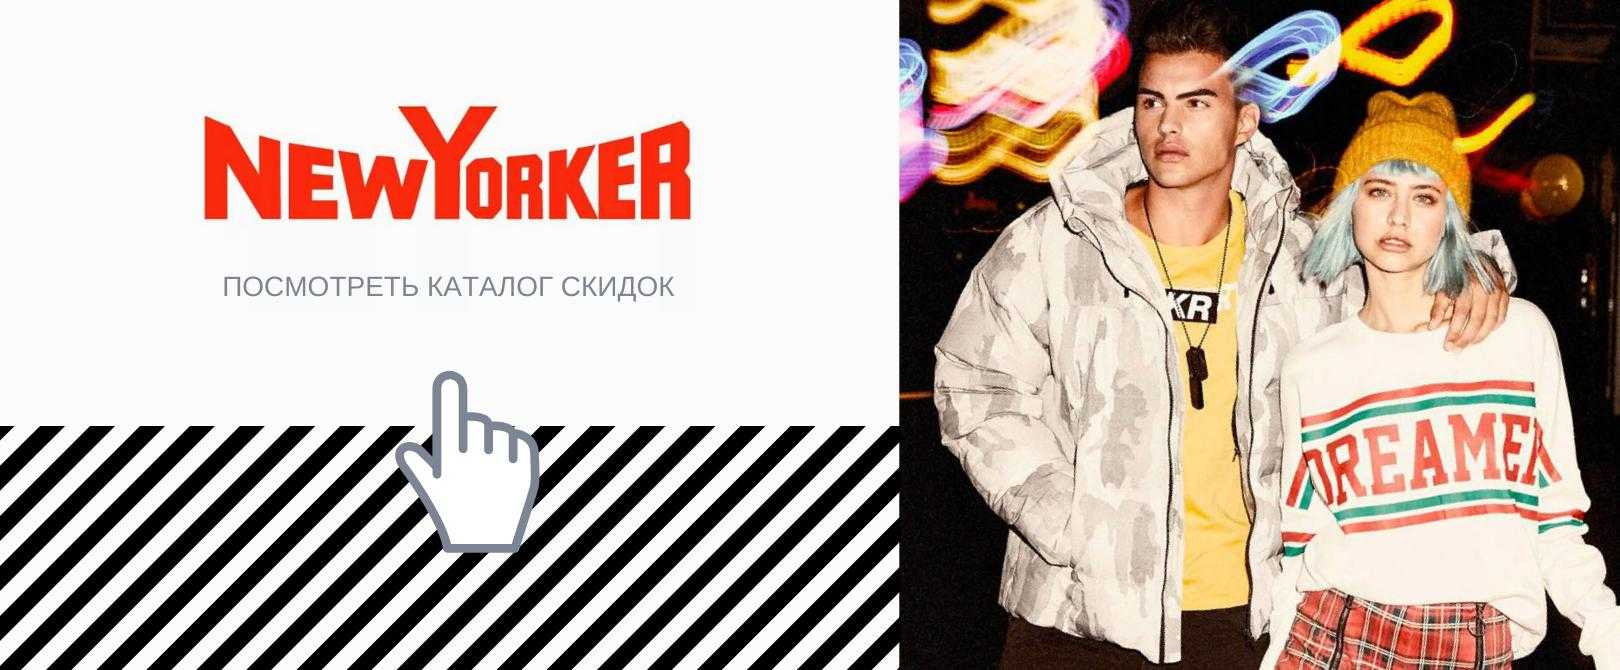 New yorker (нью йоркер) официальный сайт, каталог одежды 2017, магазины, отзывы